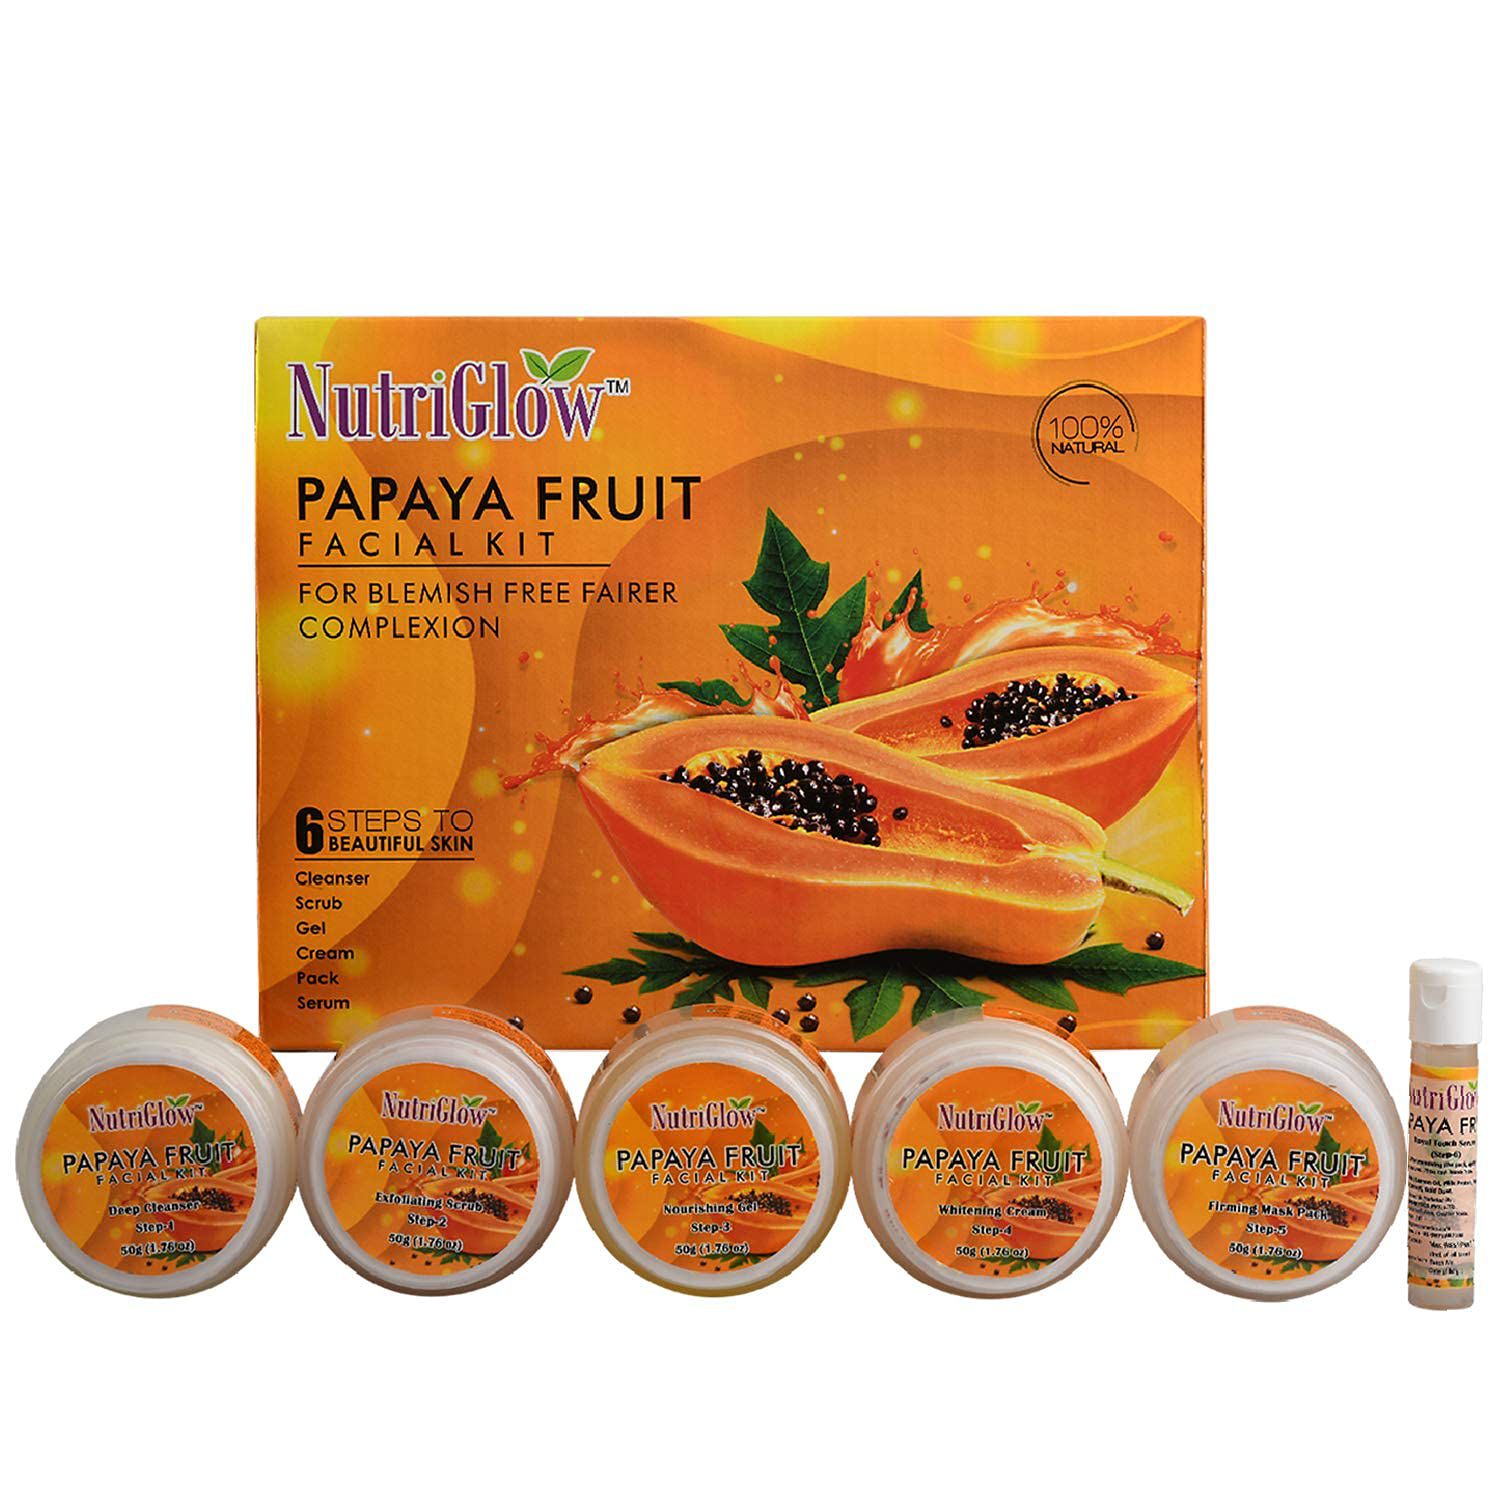     			NutriGlow Papaya Fruit Facial Kit for Men, Women for Glowing Skin with Papaya & Lemon Extract for Blemish Free, Dark Spot, 250gm + 10ml